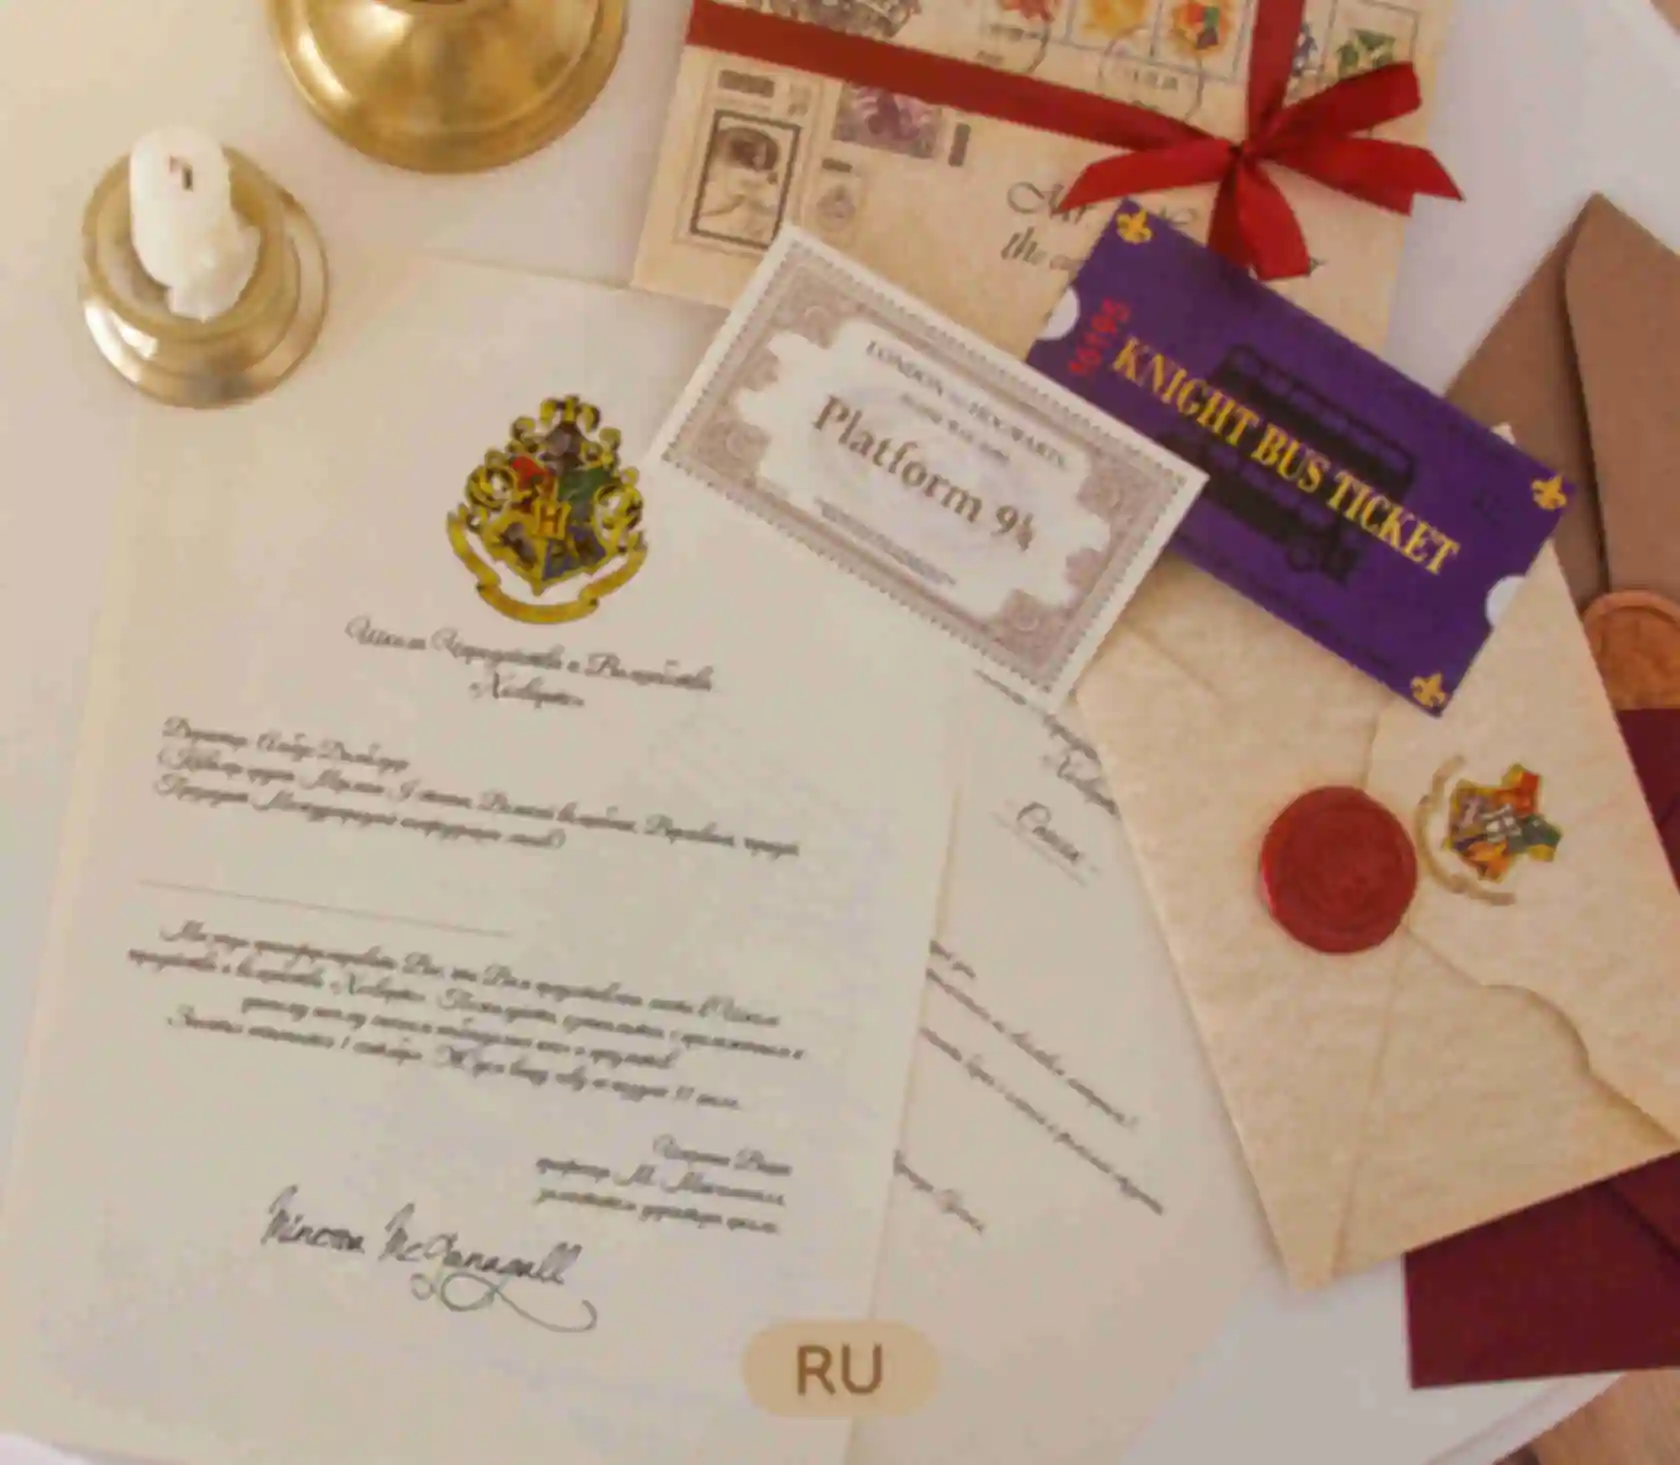 Подарок для ученика школы Хогвартс ⚡️ Бокс Гарри Поттер ⚡️ Hogwarts ⚡️ Harry Potter. Фото №4